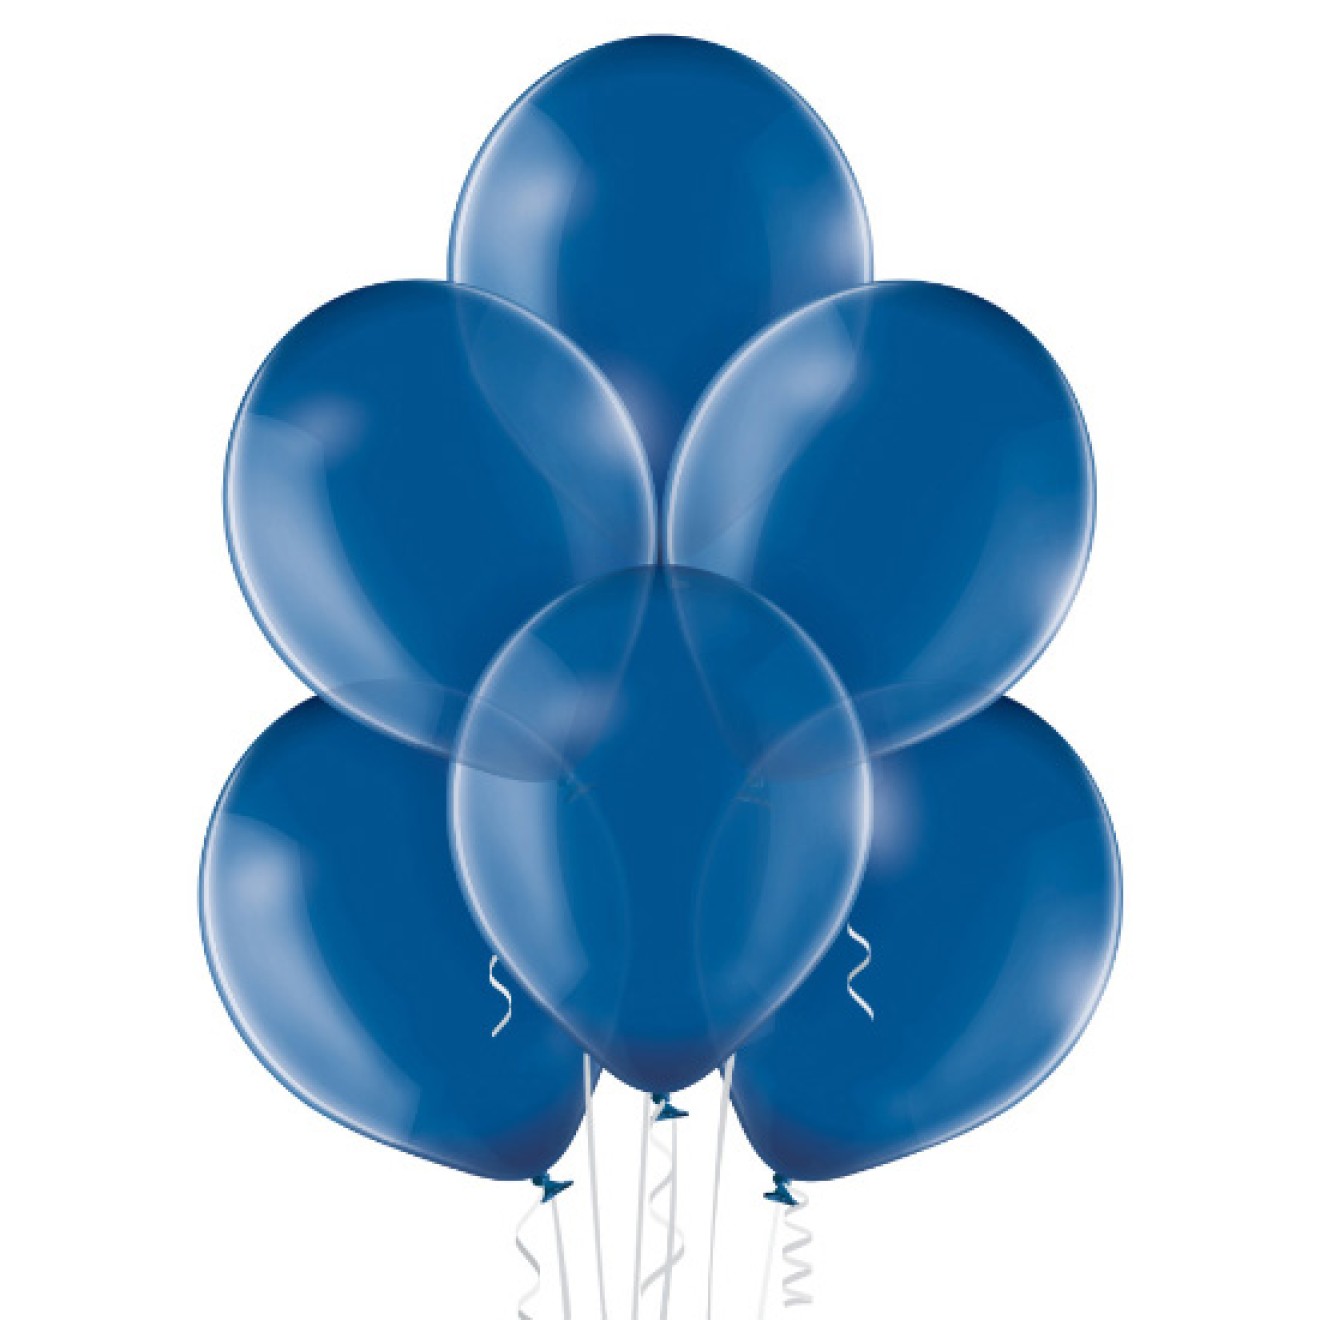 Verschluss für Luft- oder Heliumballons